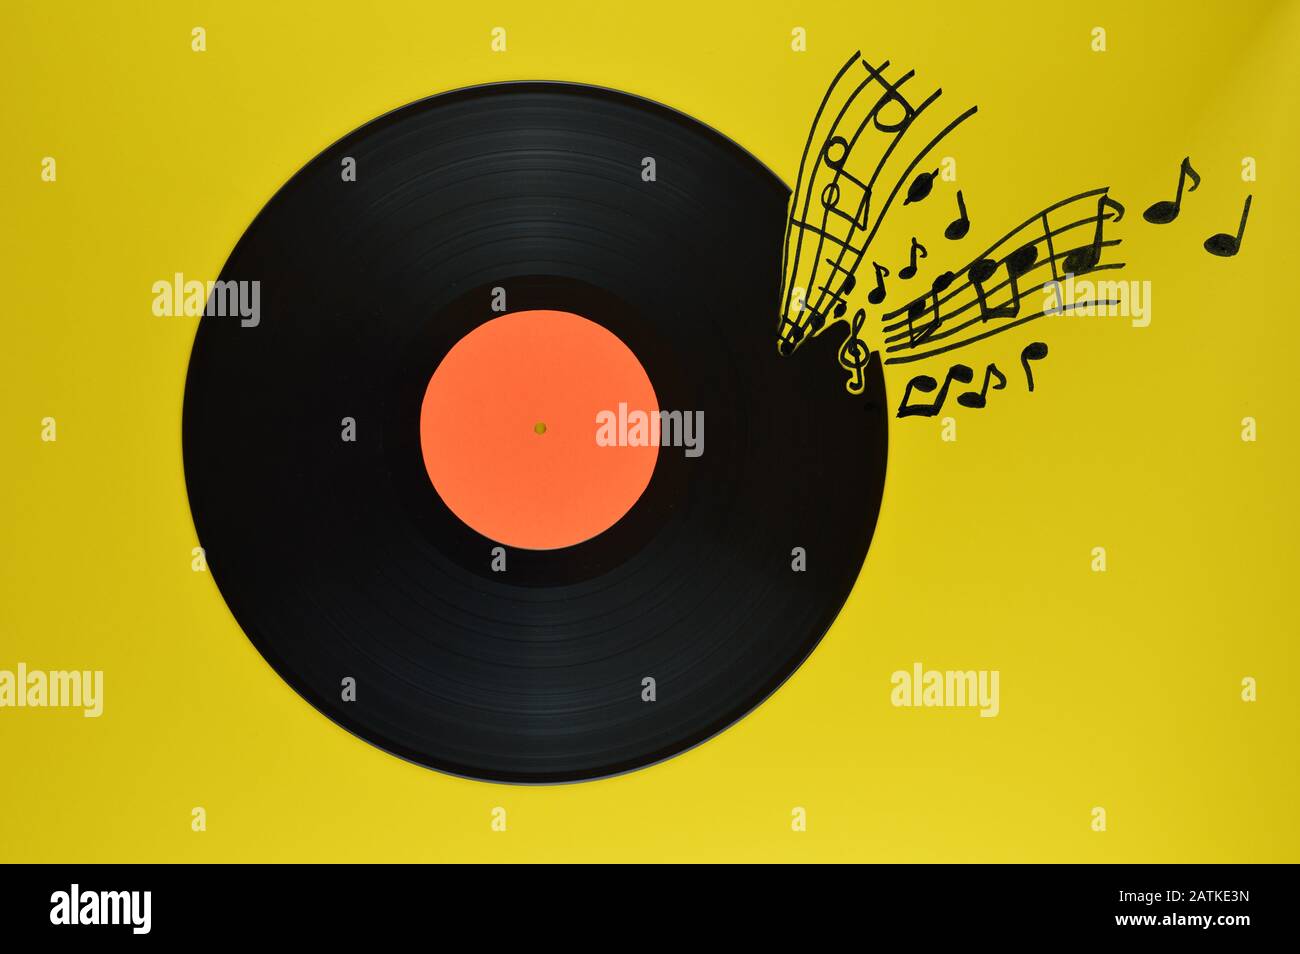 Alte schwarze Schallplatte mit leerem orangefarbenem Etikett, das auf gelbem Hintergrund mit Noten und Stangen zentriert ist Stockfoto